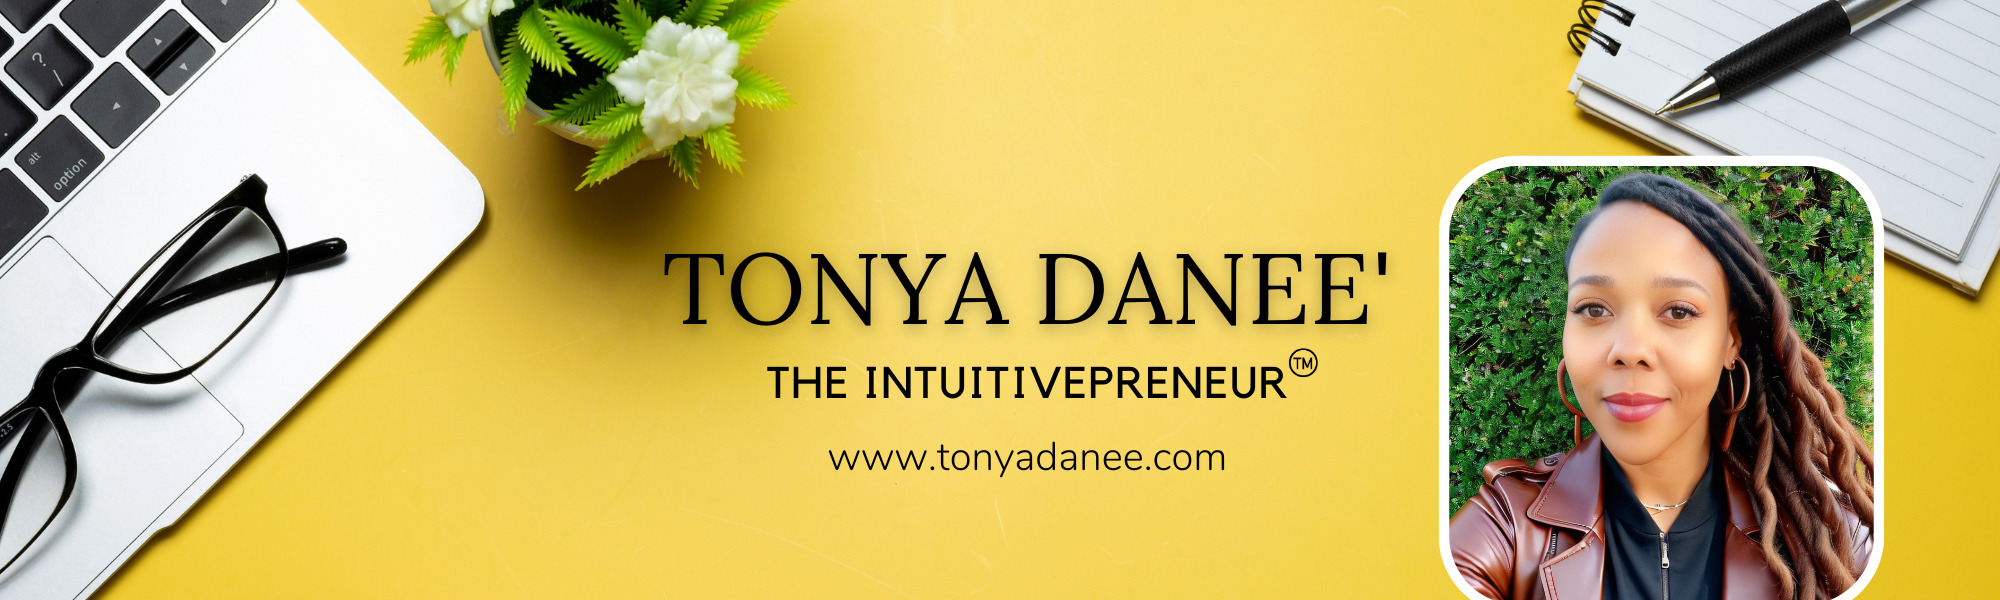 Tonya Danee-LinkedIn Cover (2)